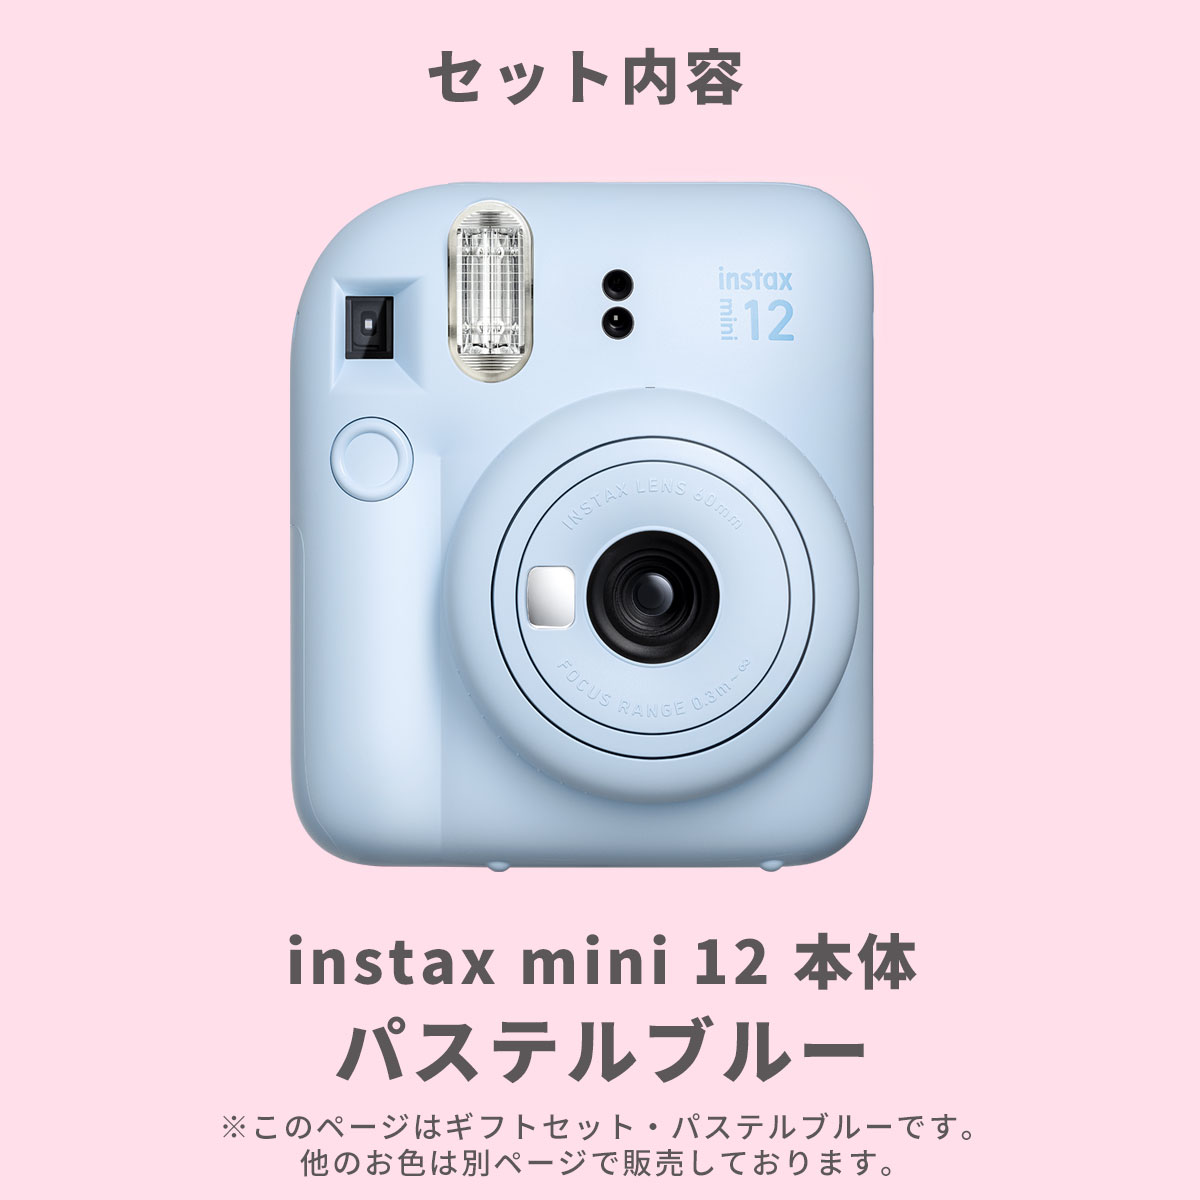 【ギフト チェキ】富士フィルム チェキ インスタントカメラ　instax mini 12【パステルブルー】カメラケース付きギフトBOXセット